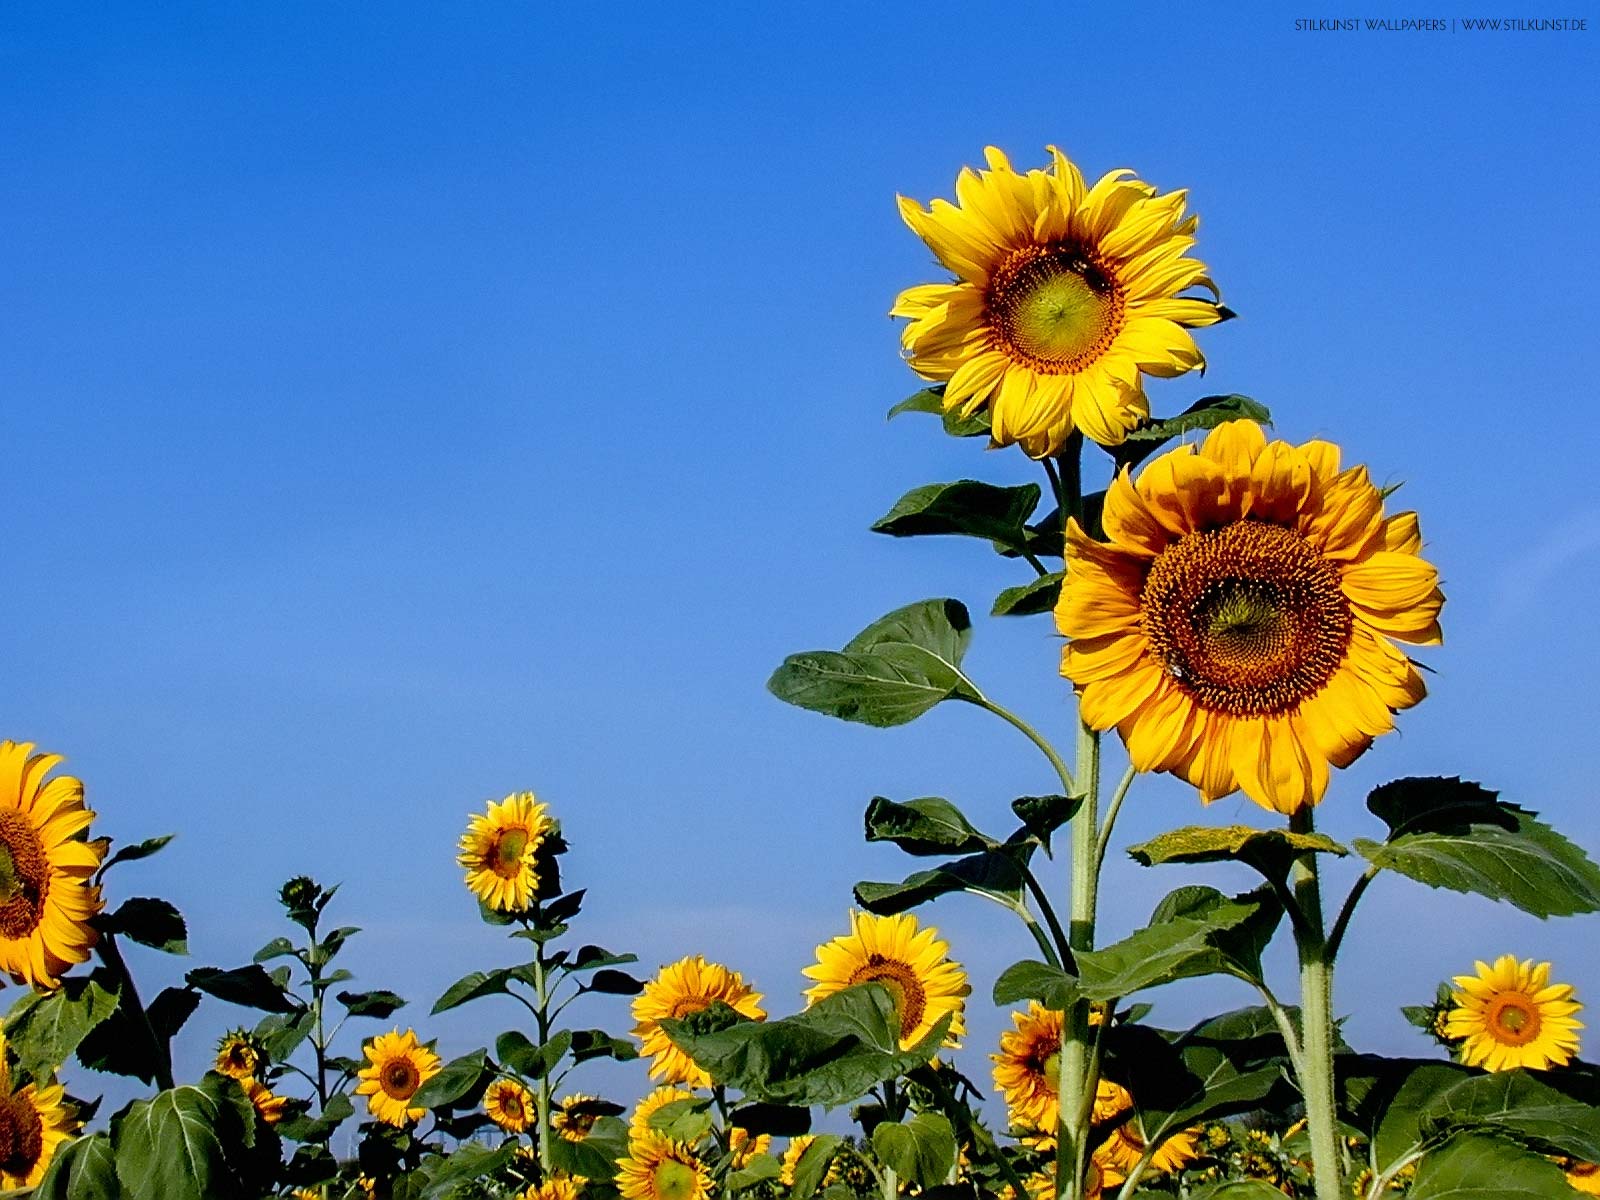 Sonnenblumen auf dem Feld | 1600 x 1200px | Bild: ©by Sabrina | Reiner | www.stilkunst.de | Lizenz: CC BY-SA